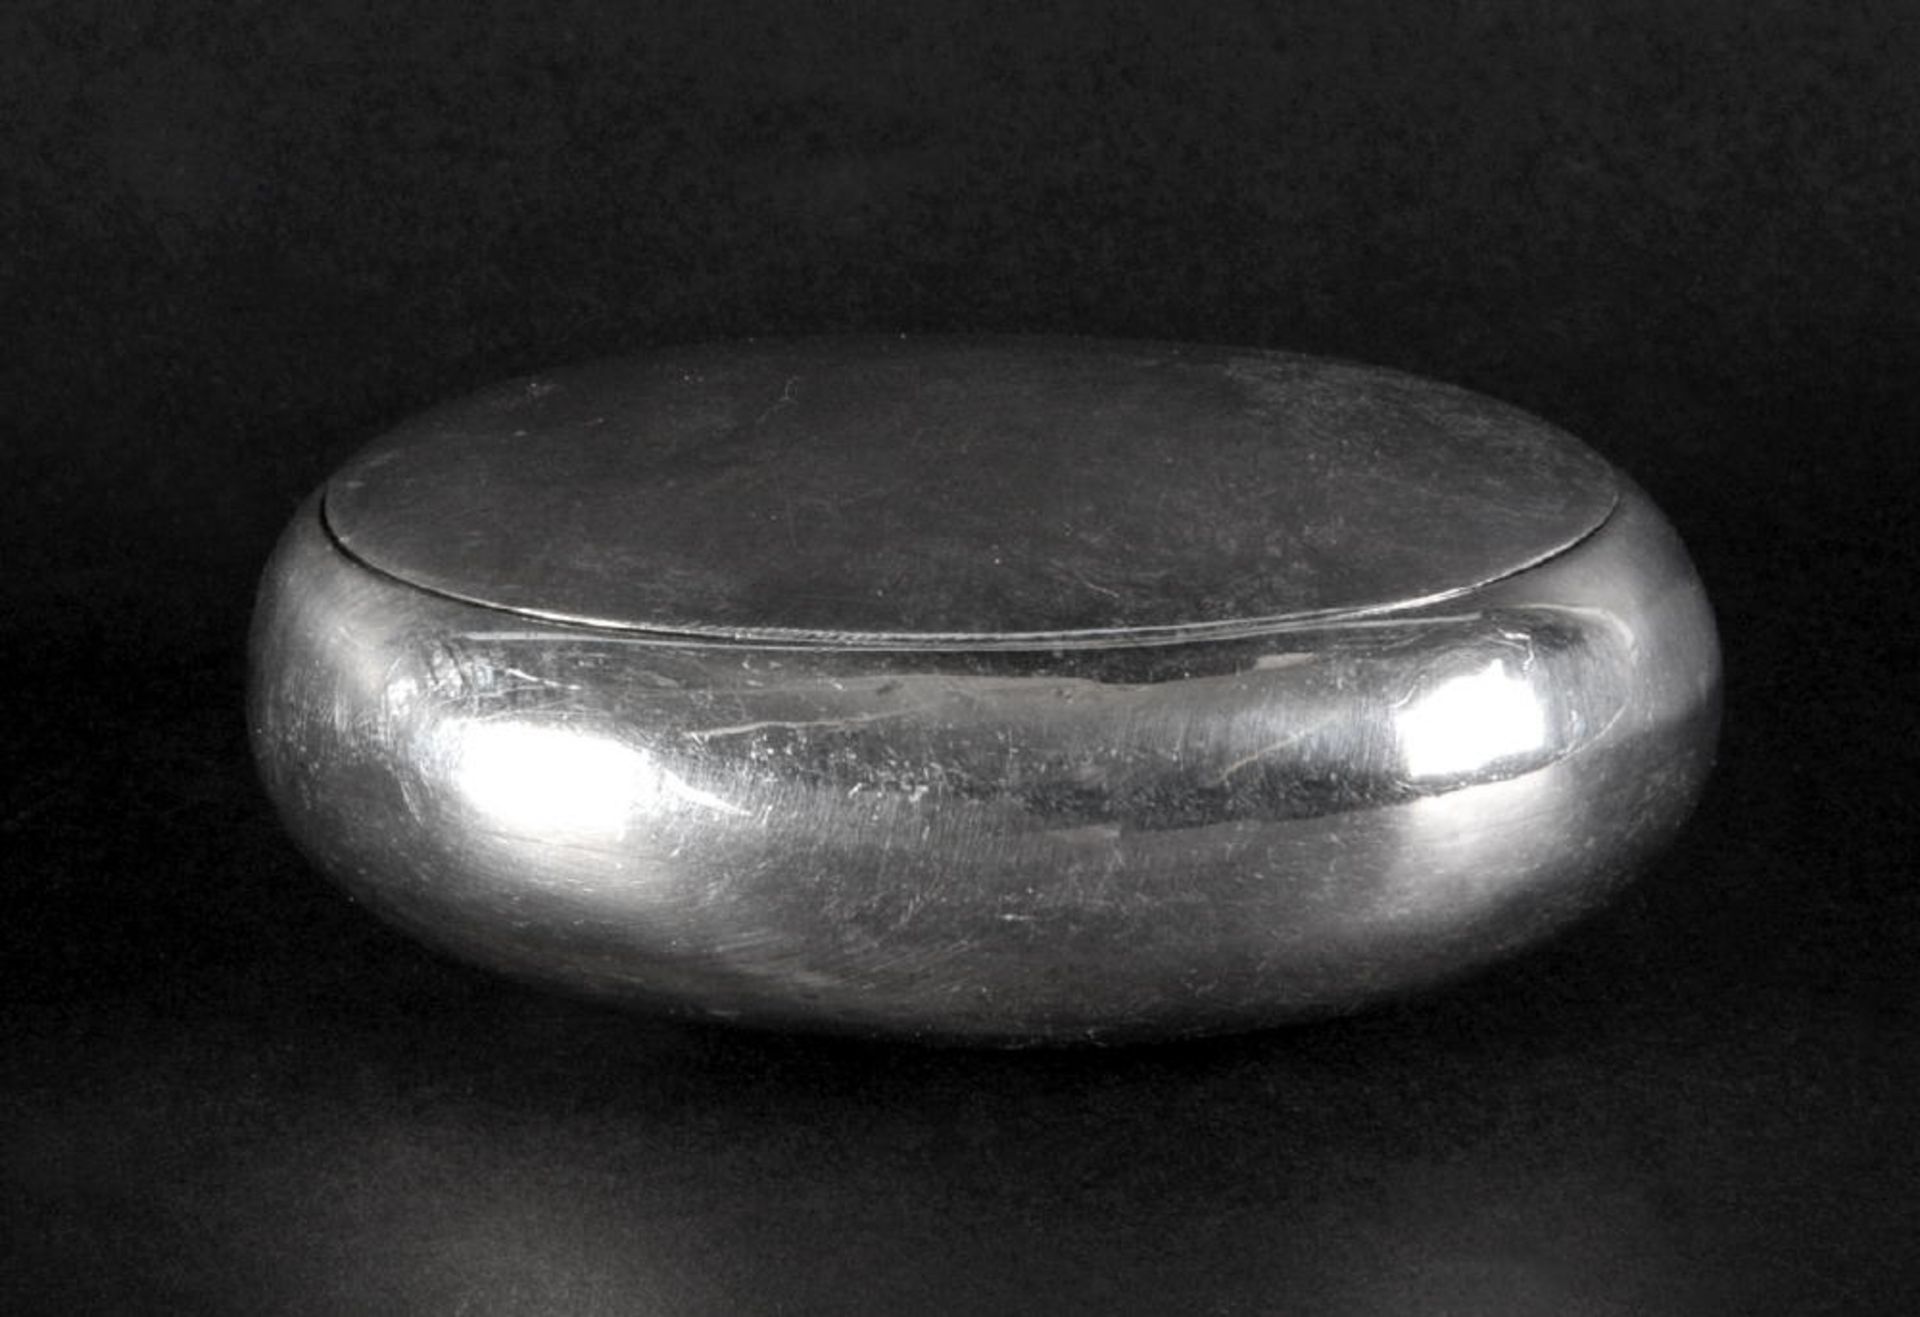 Deckeldose925 Silber, 67 g, innen vergoldet, ovale Form, 3 x 8,5 x 6,5 cm, Beschau: London, 1908-09